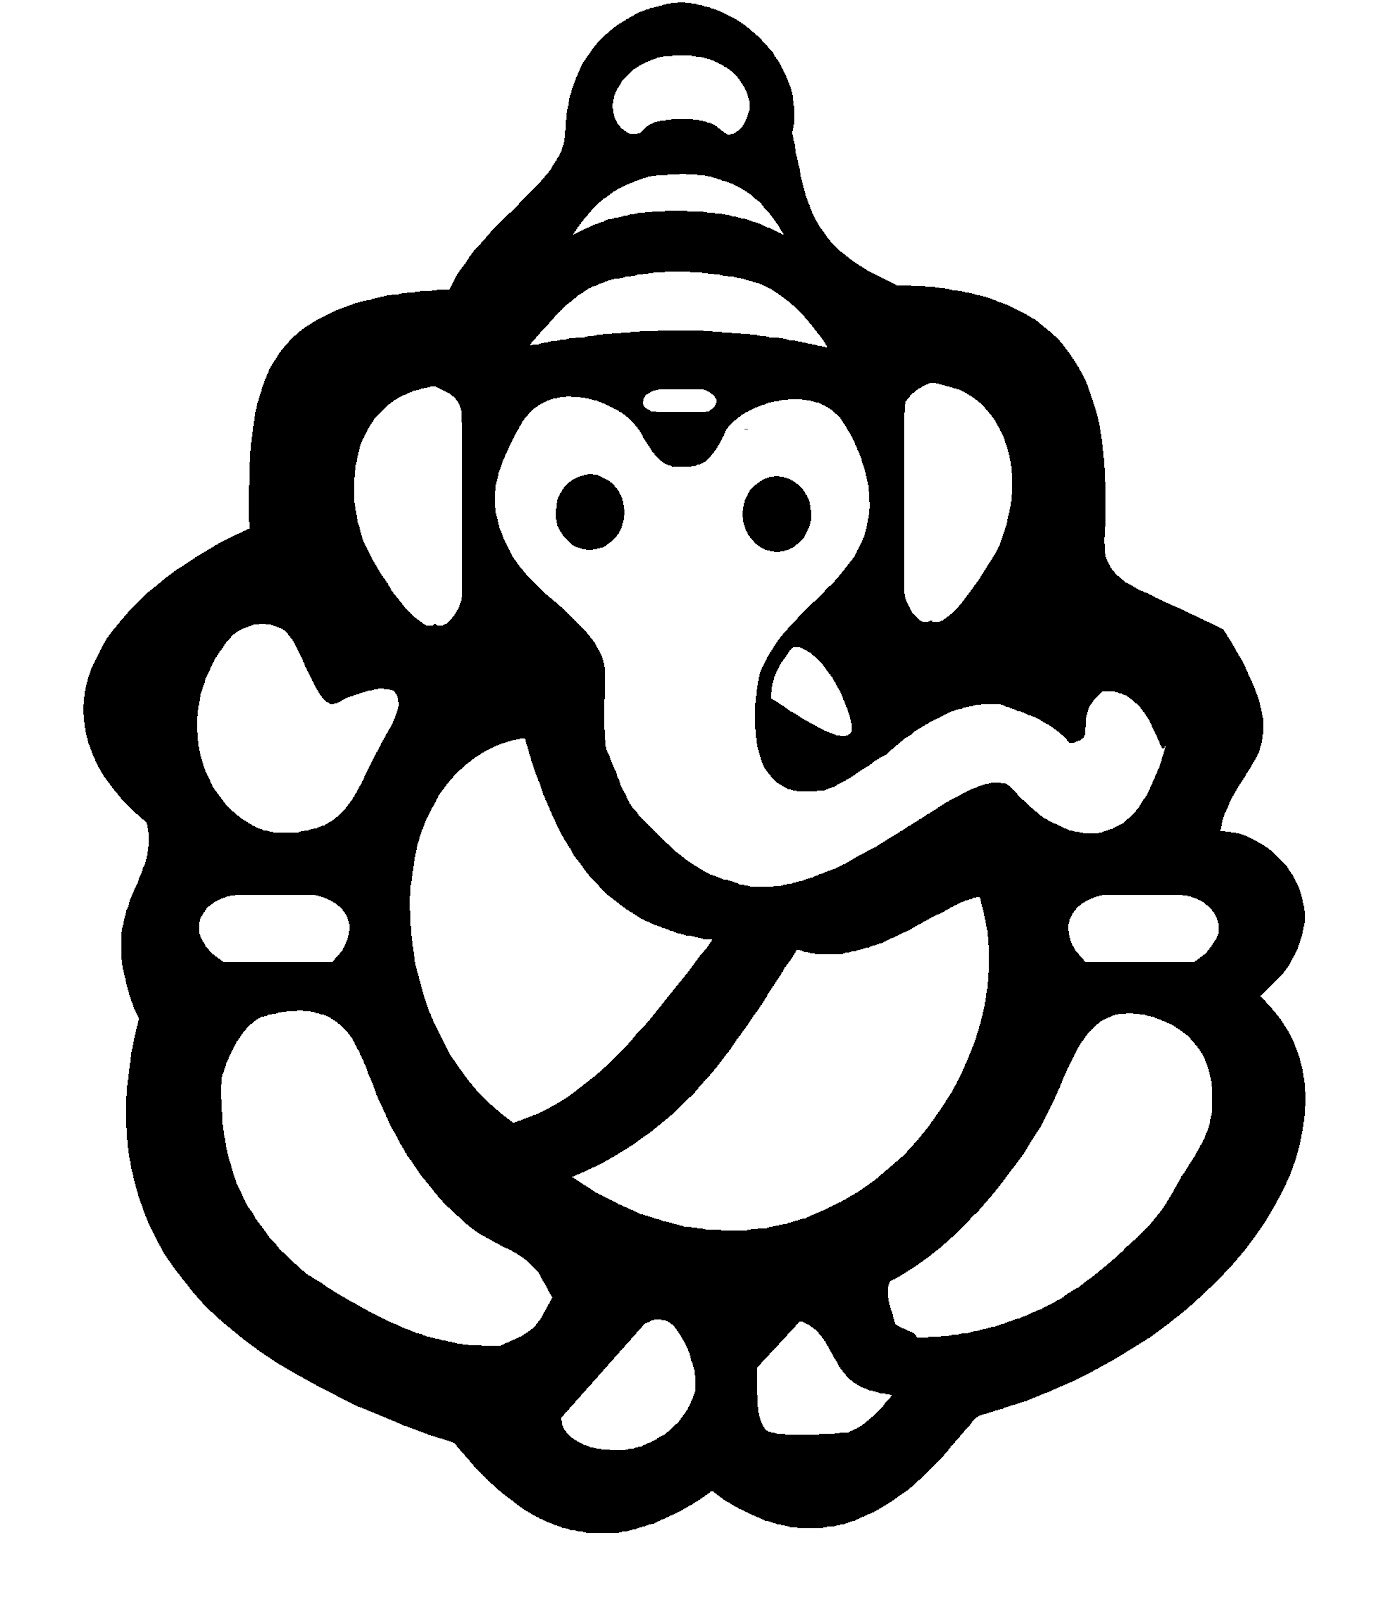 Letter g ganesha logo design Royalty Free Vector Image